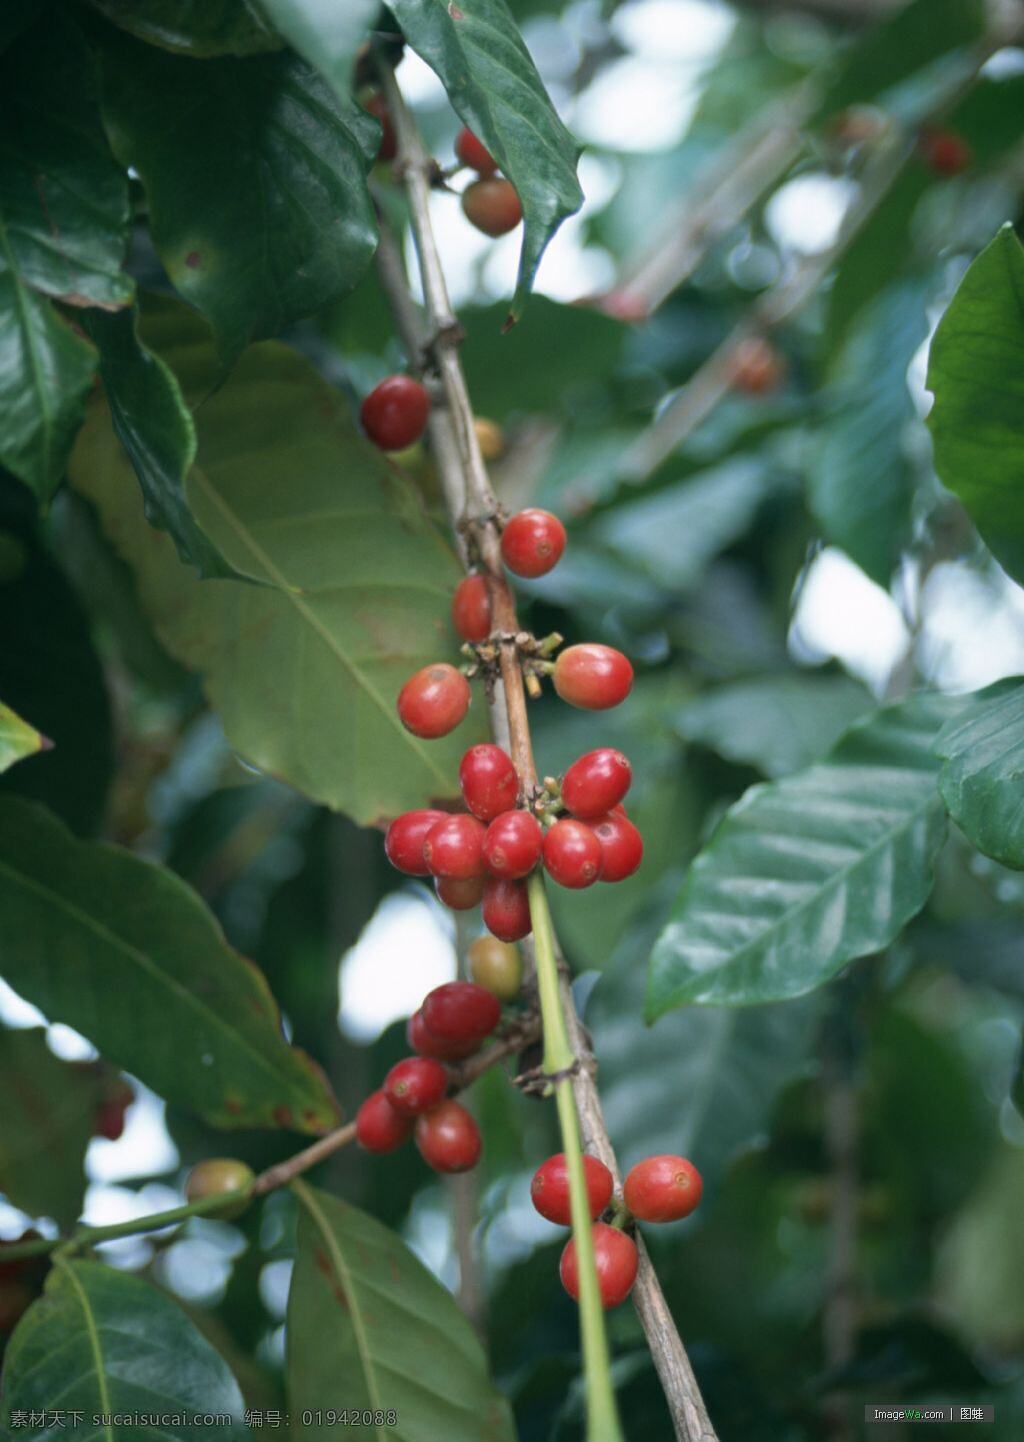 咖啡树 咖啡豆 自然风景 自然景观